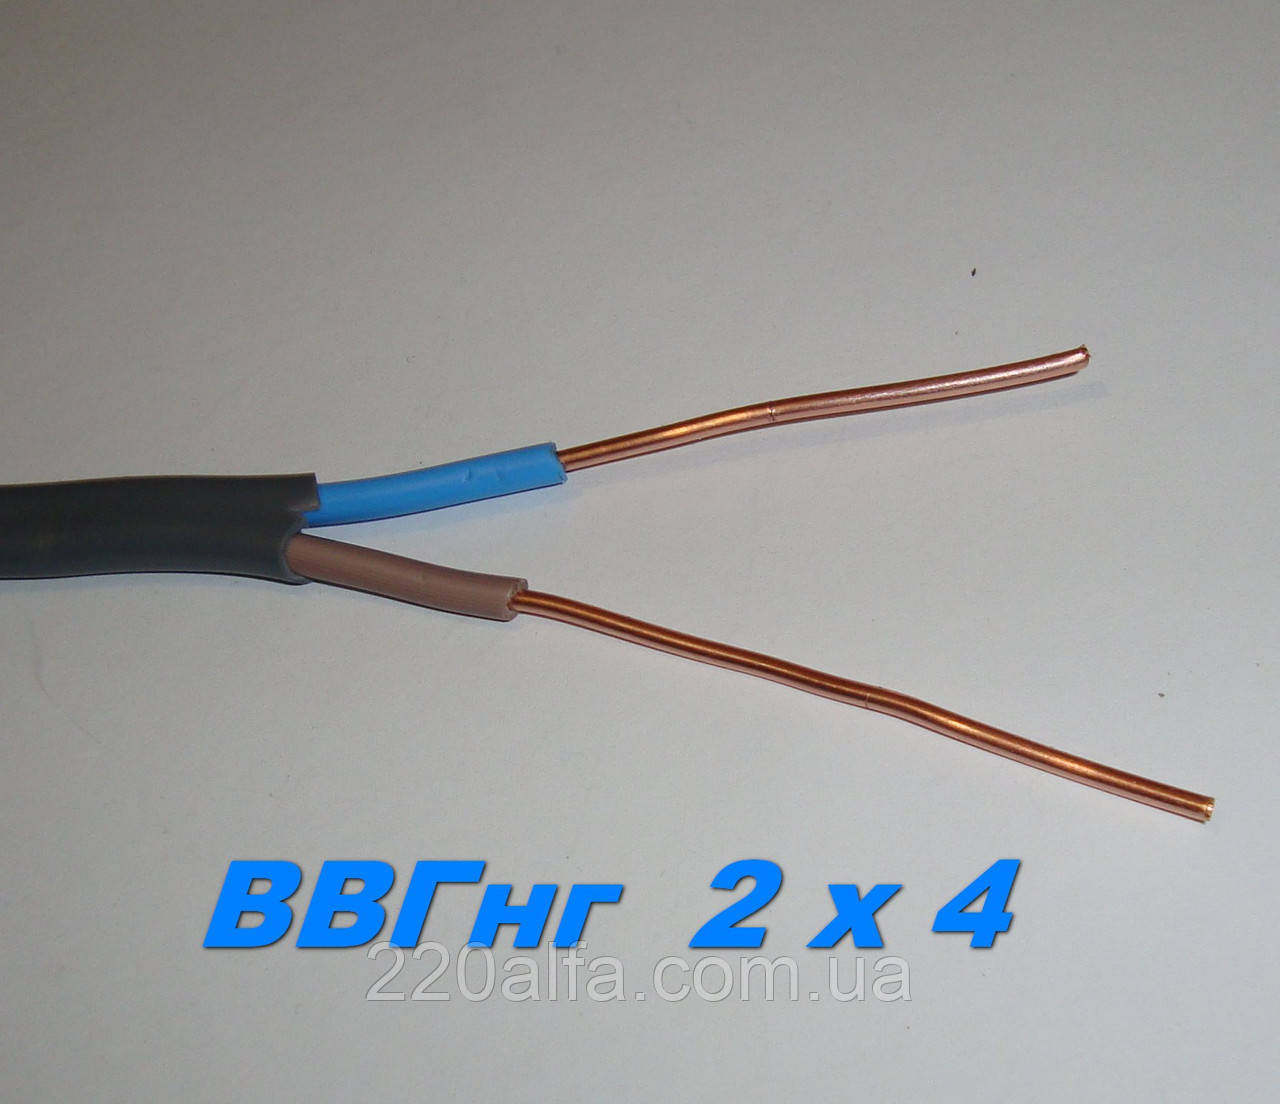 Високоякісний кабель ВВГНГД 2х4 для надійної електропроводки. Одеса-Каблекс